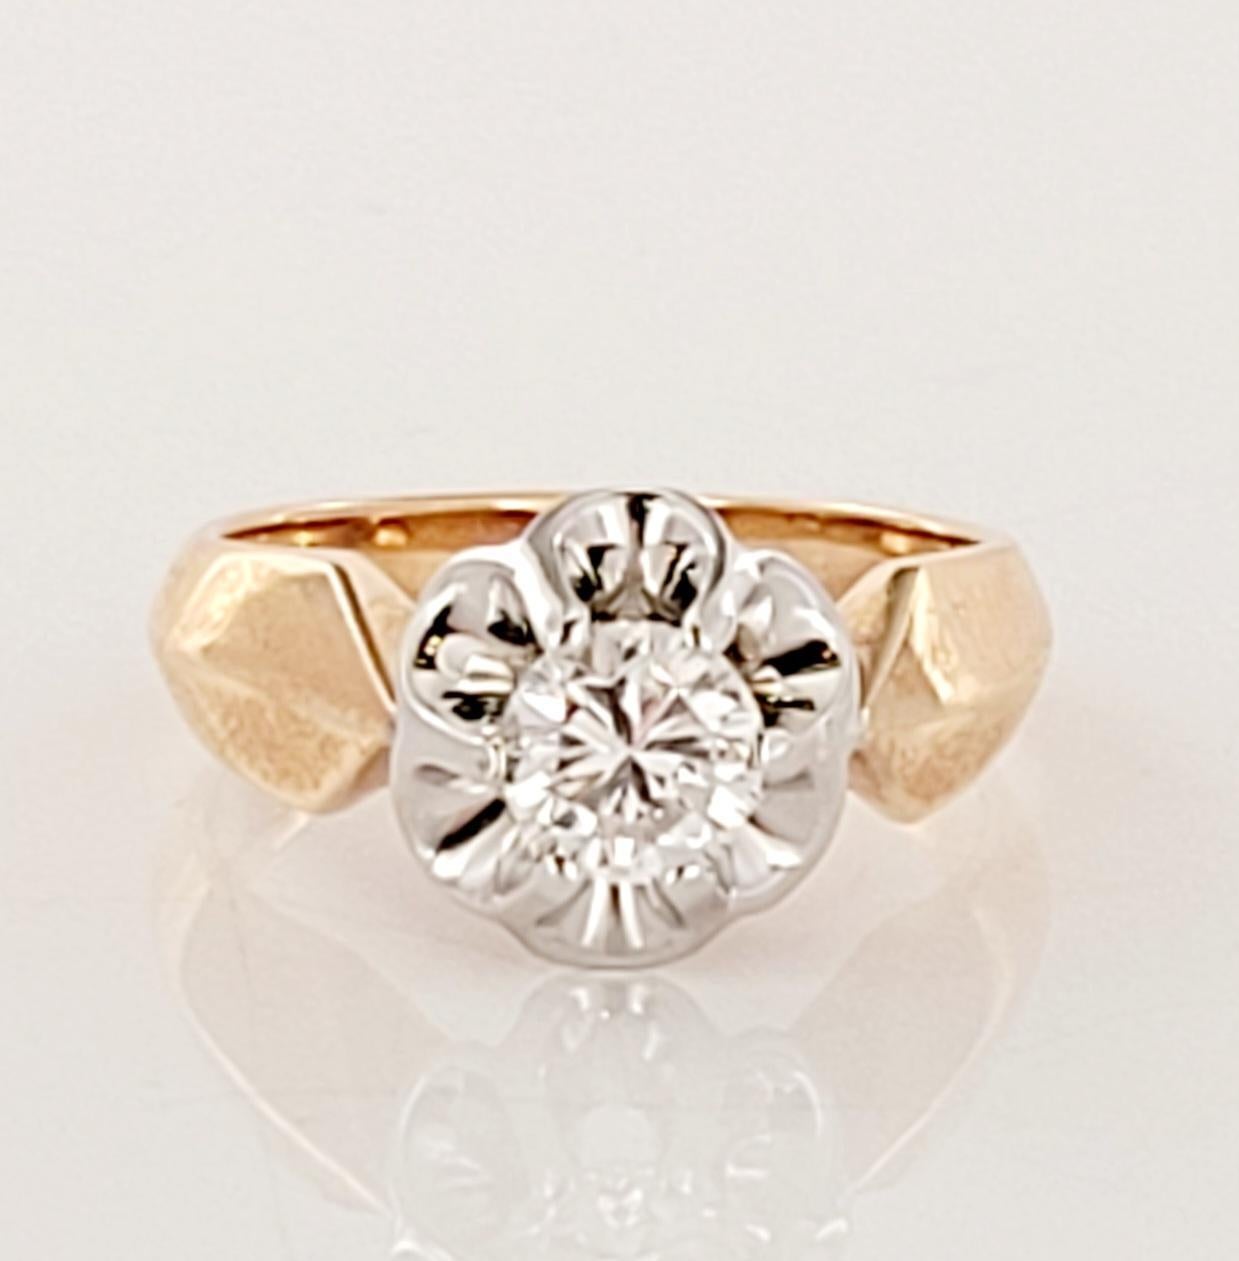 Erleben Sie die zeitlose Eleganz des europäischen Vintage-Stils mit diesem exquisiten Solitär-Diamantring. Dieser Ring aus 14-karätigem Roségold und Palladium ist mit einem atemberaubenden 1-Kolben-Diamanten besetzt, der mit unvergleichlicher